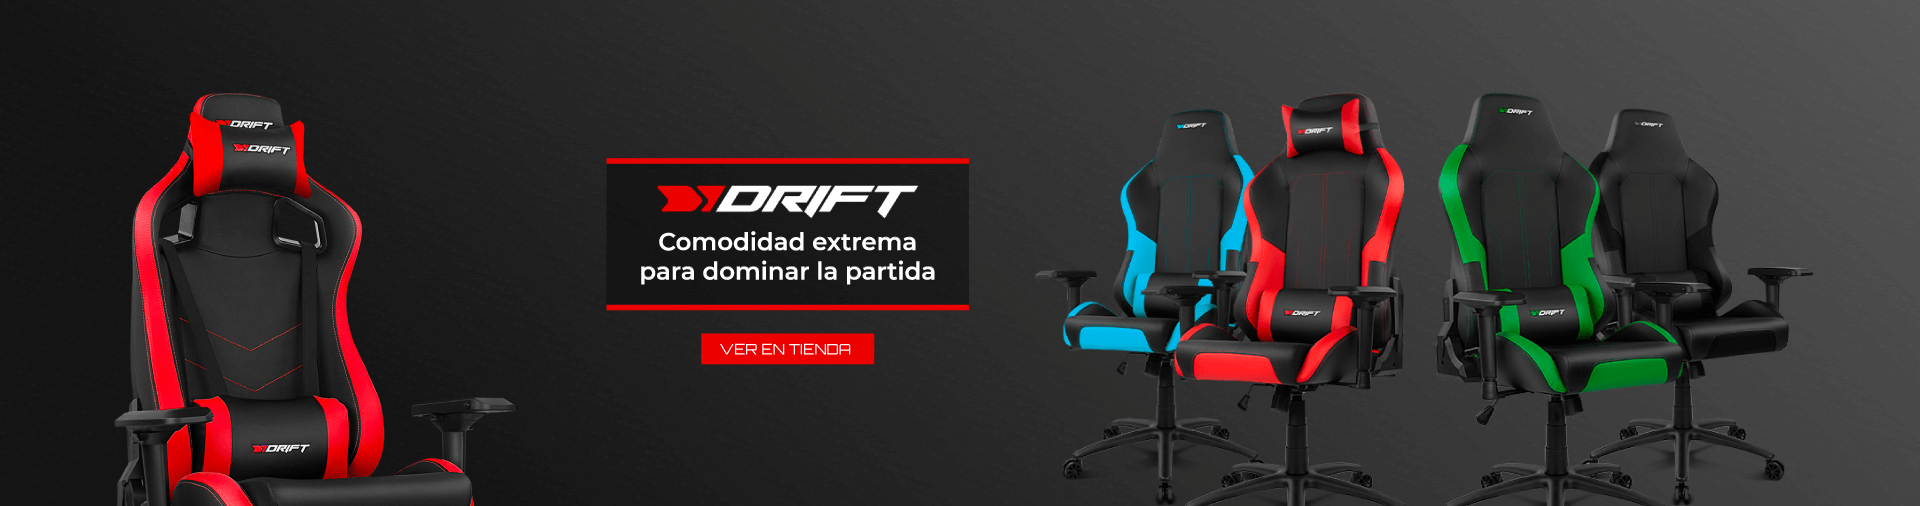 La marca Drift te ofrece unas sillas gaming de muy alto rendimiendo.